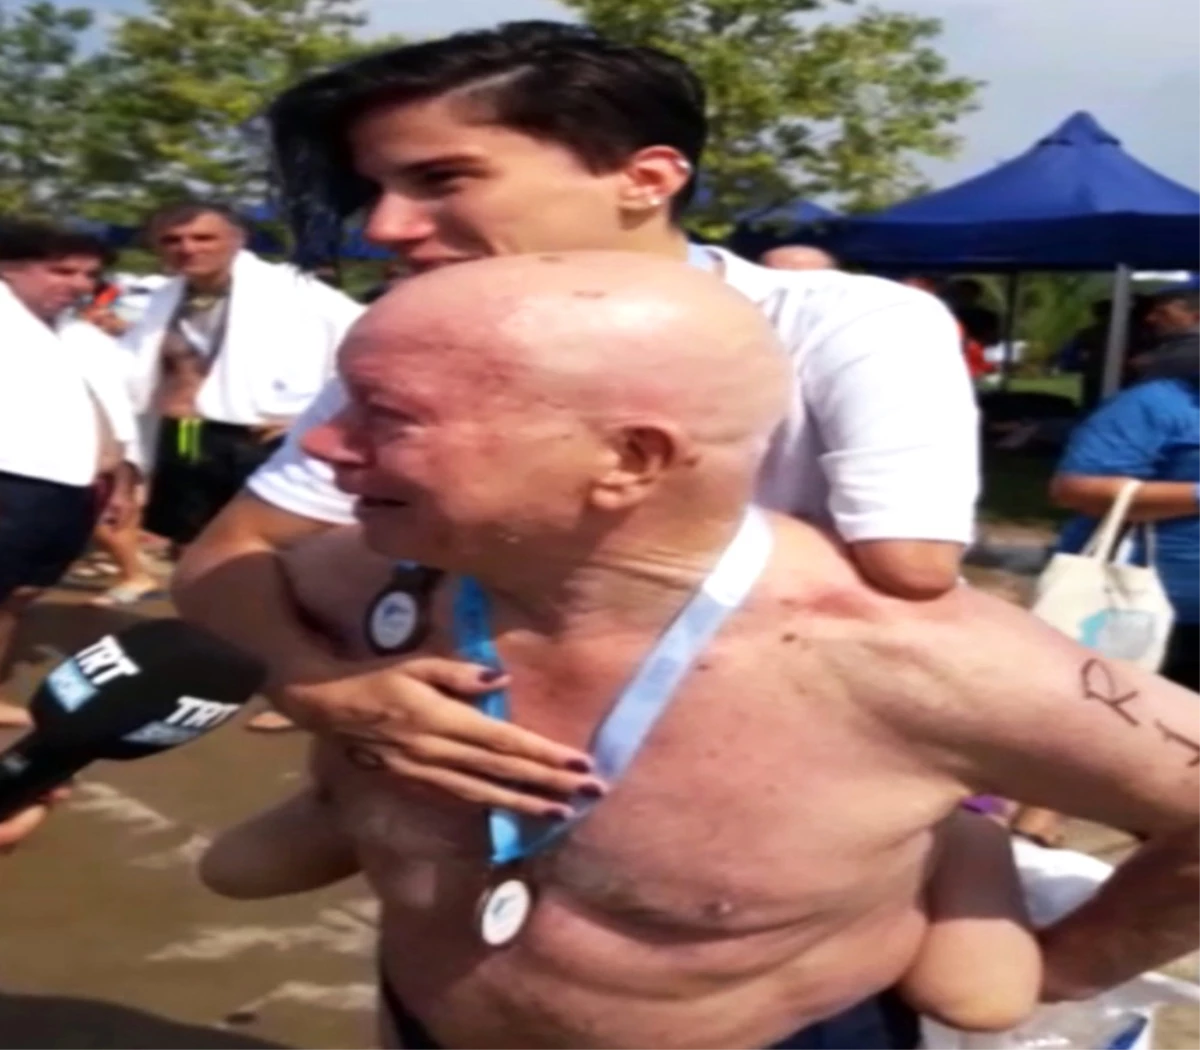 76 Yaşındaki Namık Ekin Paralimpik Sporcuyu Sırtında Taşıdı